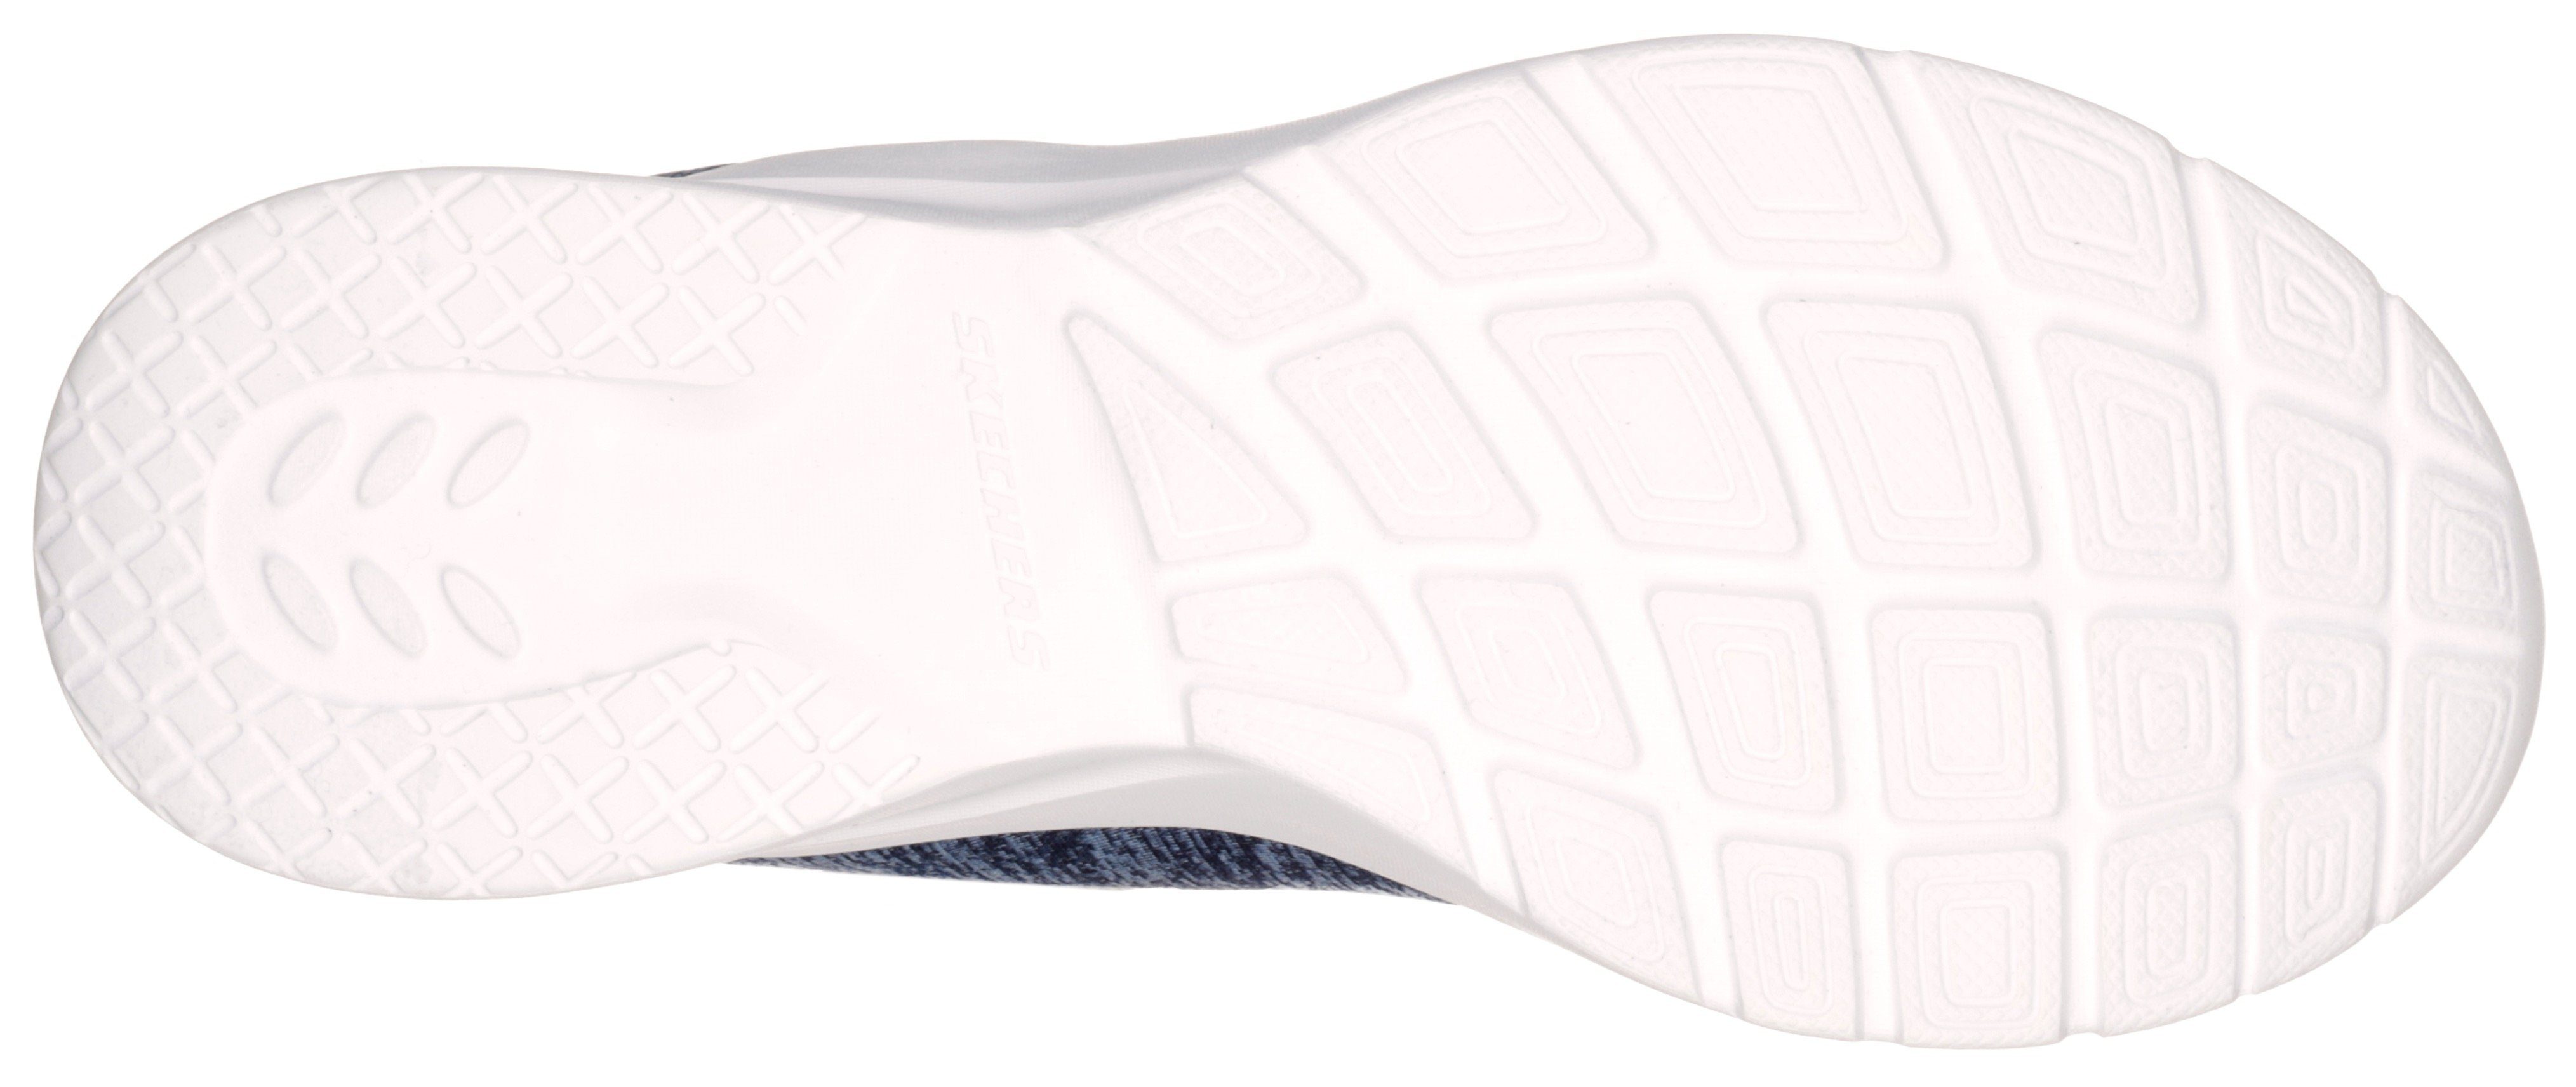 FLASH für 2.0-IN Maschinenwäsche Slip-On navy-rosa DYNAMIGHT Sneaker Skechers geeignet A